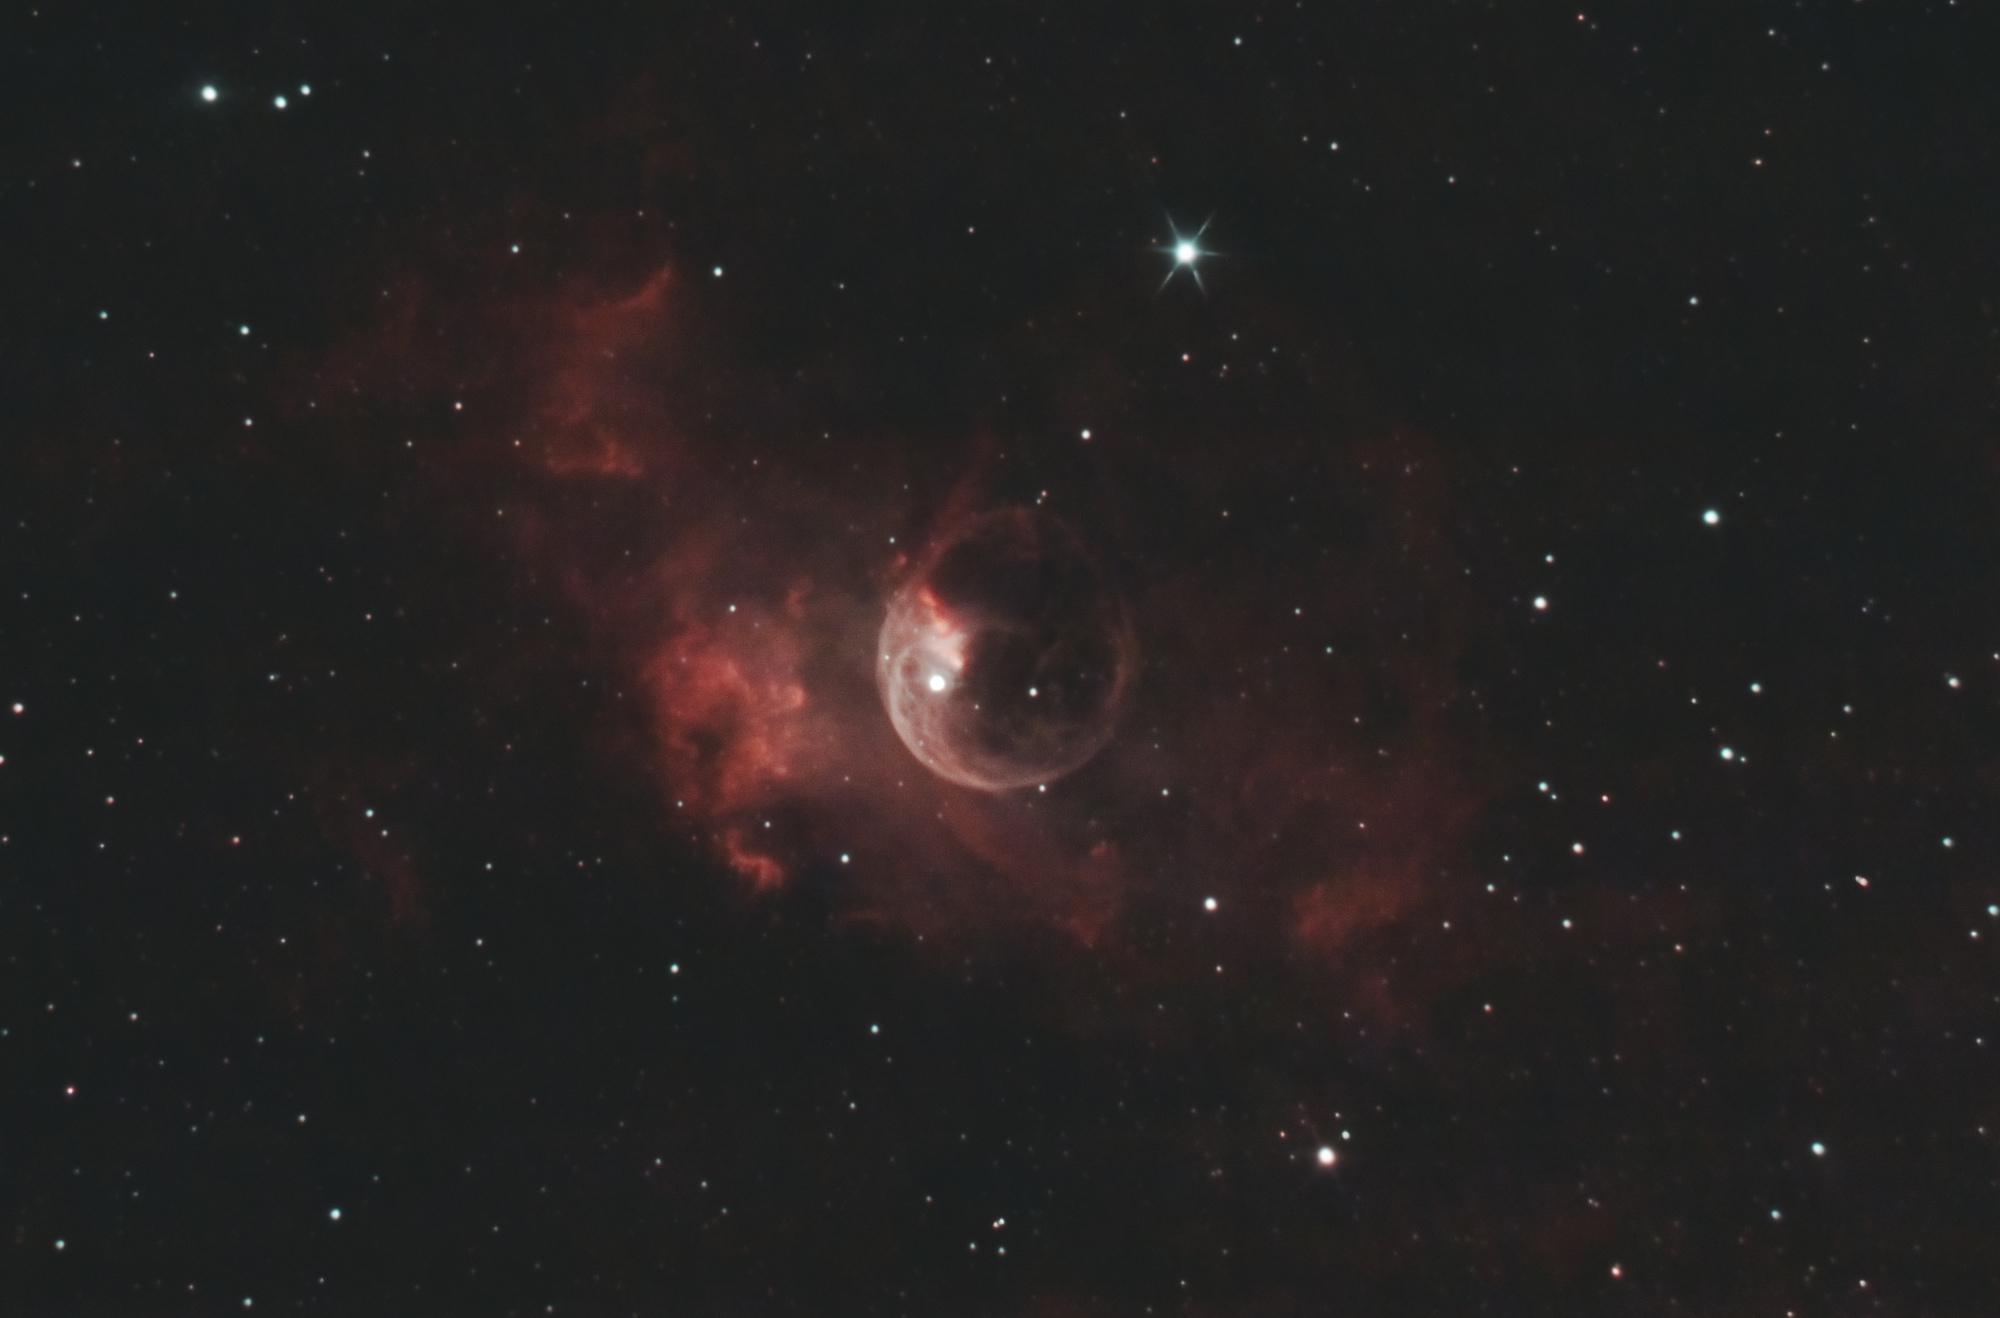 NGC_7635-result_18120_siril_s.thumb.jpg.38a9dfc6c8b52e2c39be2bb5f1e4deef.jpg